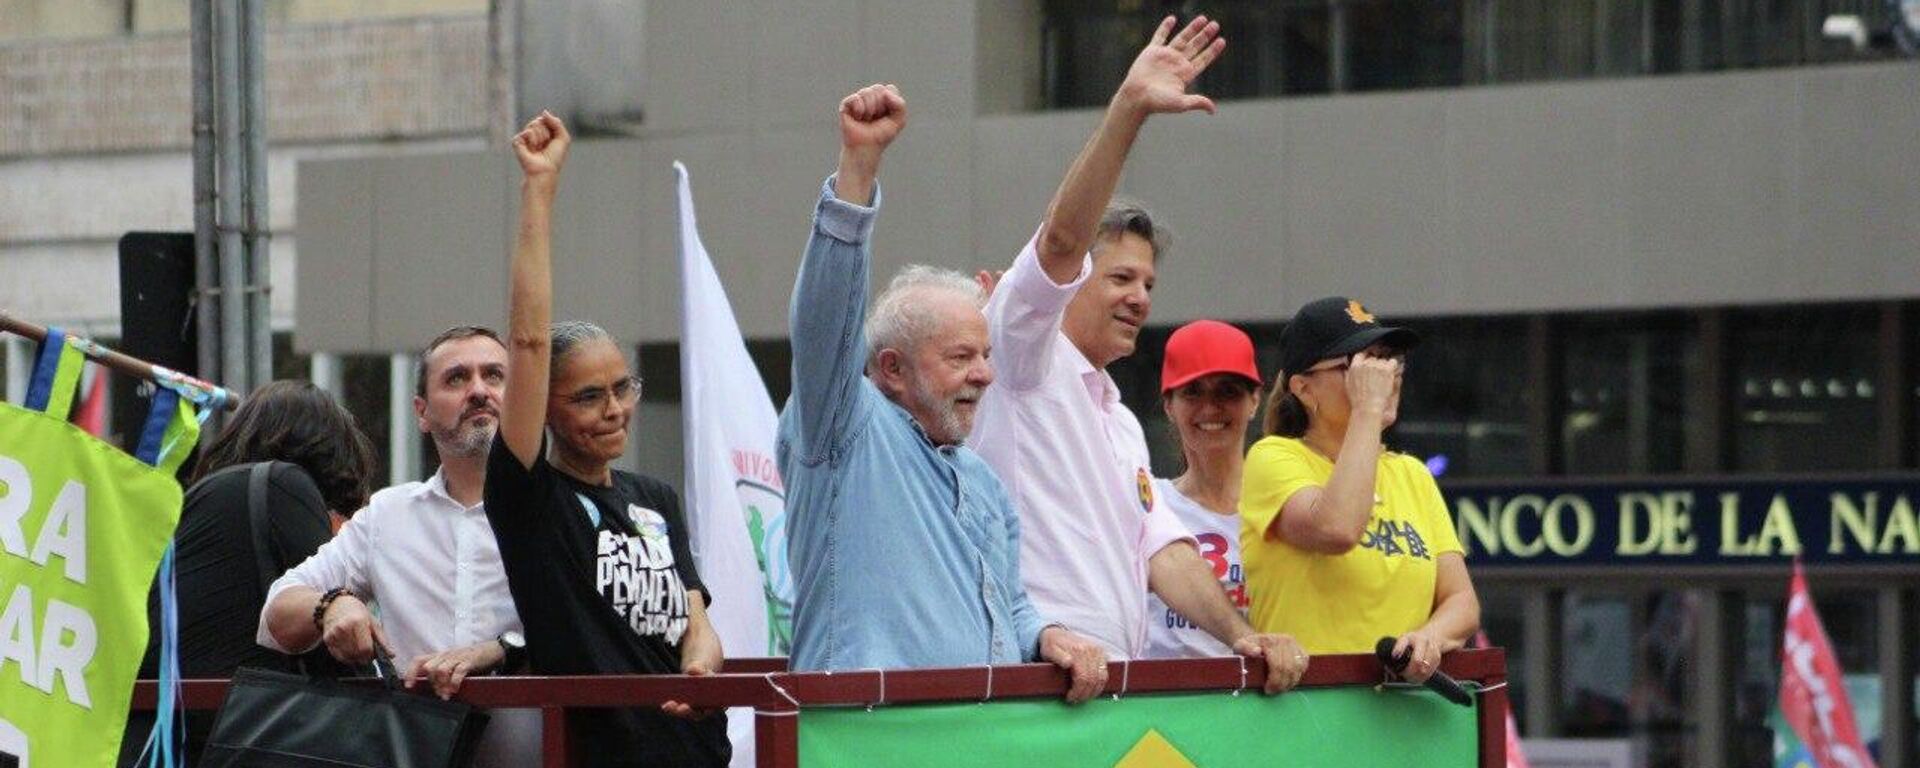 El exmandatario brasileño, Lula da Silva, en su último acto de campaña antes de la segunda vuelta de las elecciones - Sputnik Mundo, 1920, 29.10.2022